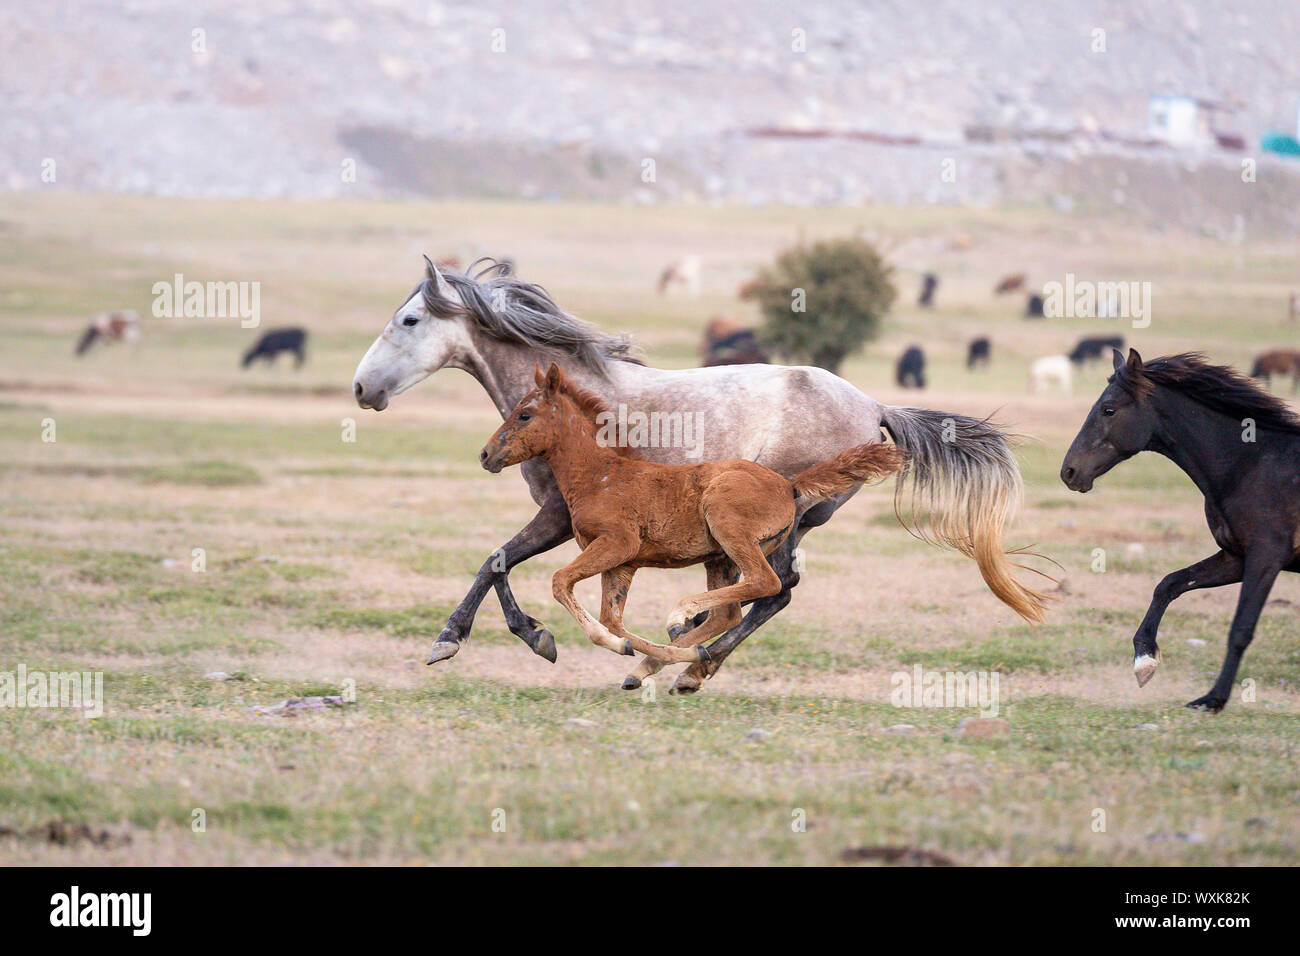 Wild horse, chevaux sauvages. Jument grise avec poulain dans un galop. La Turquie Banque D'Images